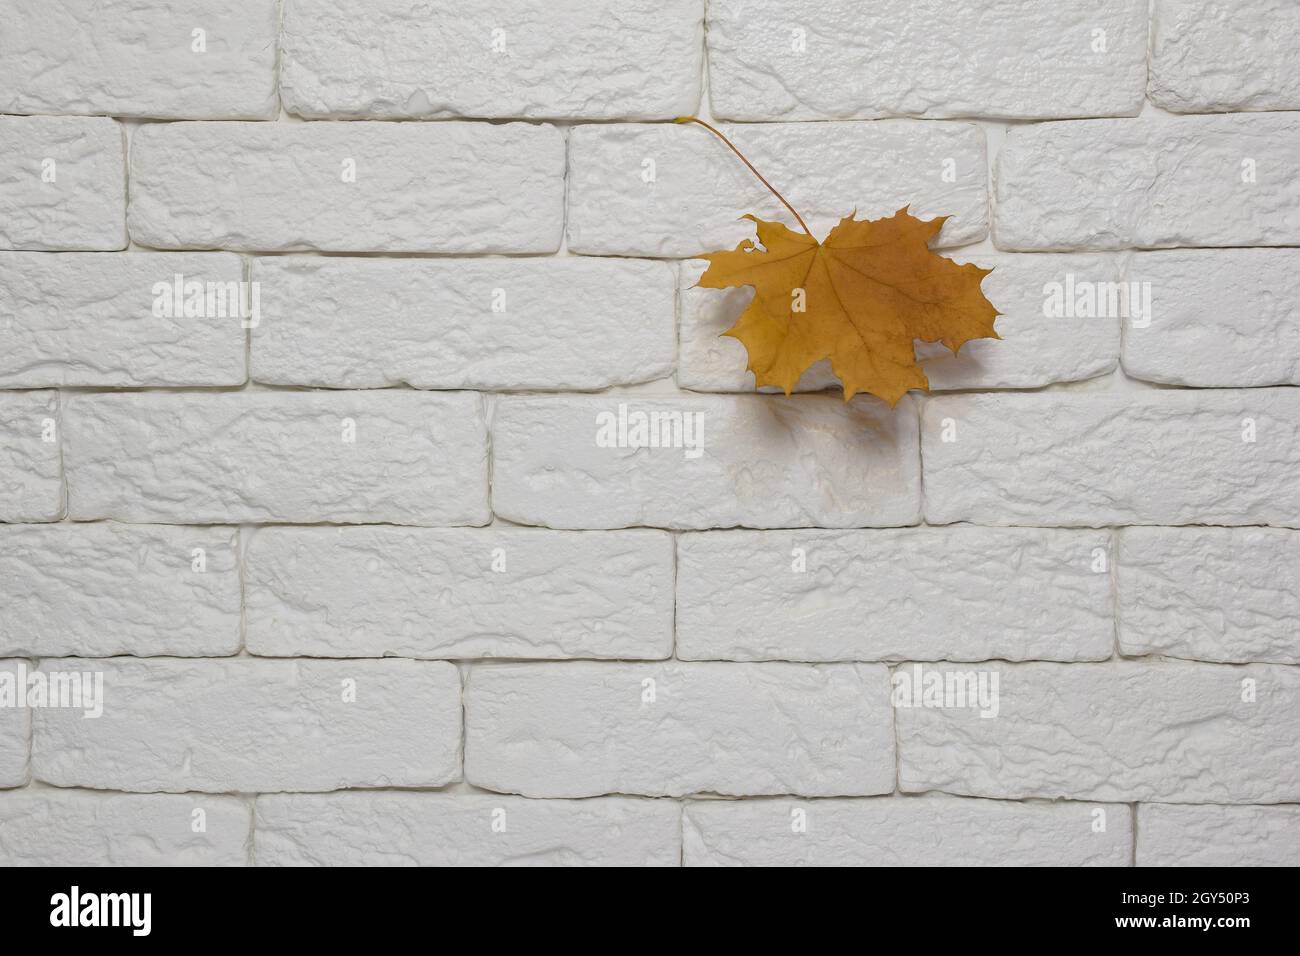 Une seule feuille d'érable d'automne est suspendue sur un mur de briques légères sur le côté droit.Le côté gauche du mur est vide Banque D'Images